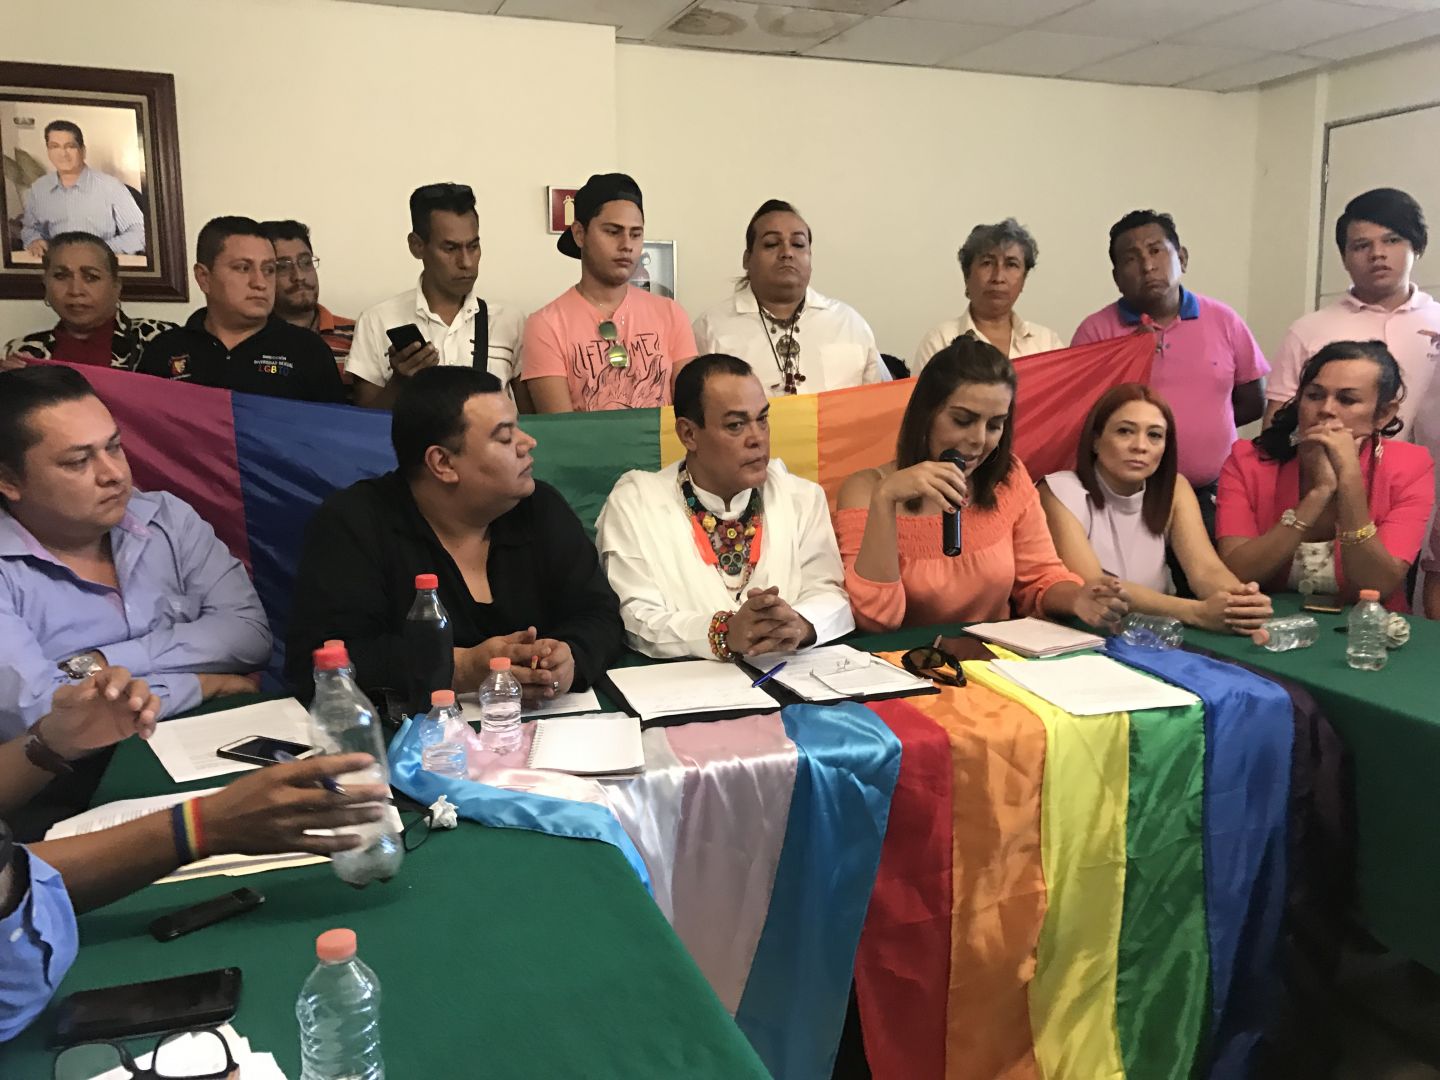 Que la Cuarta Transformación llegue a la comunidad LGBTTTI, piden activistas